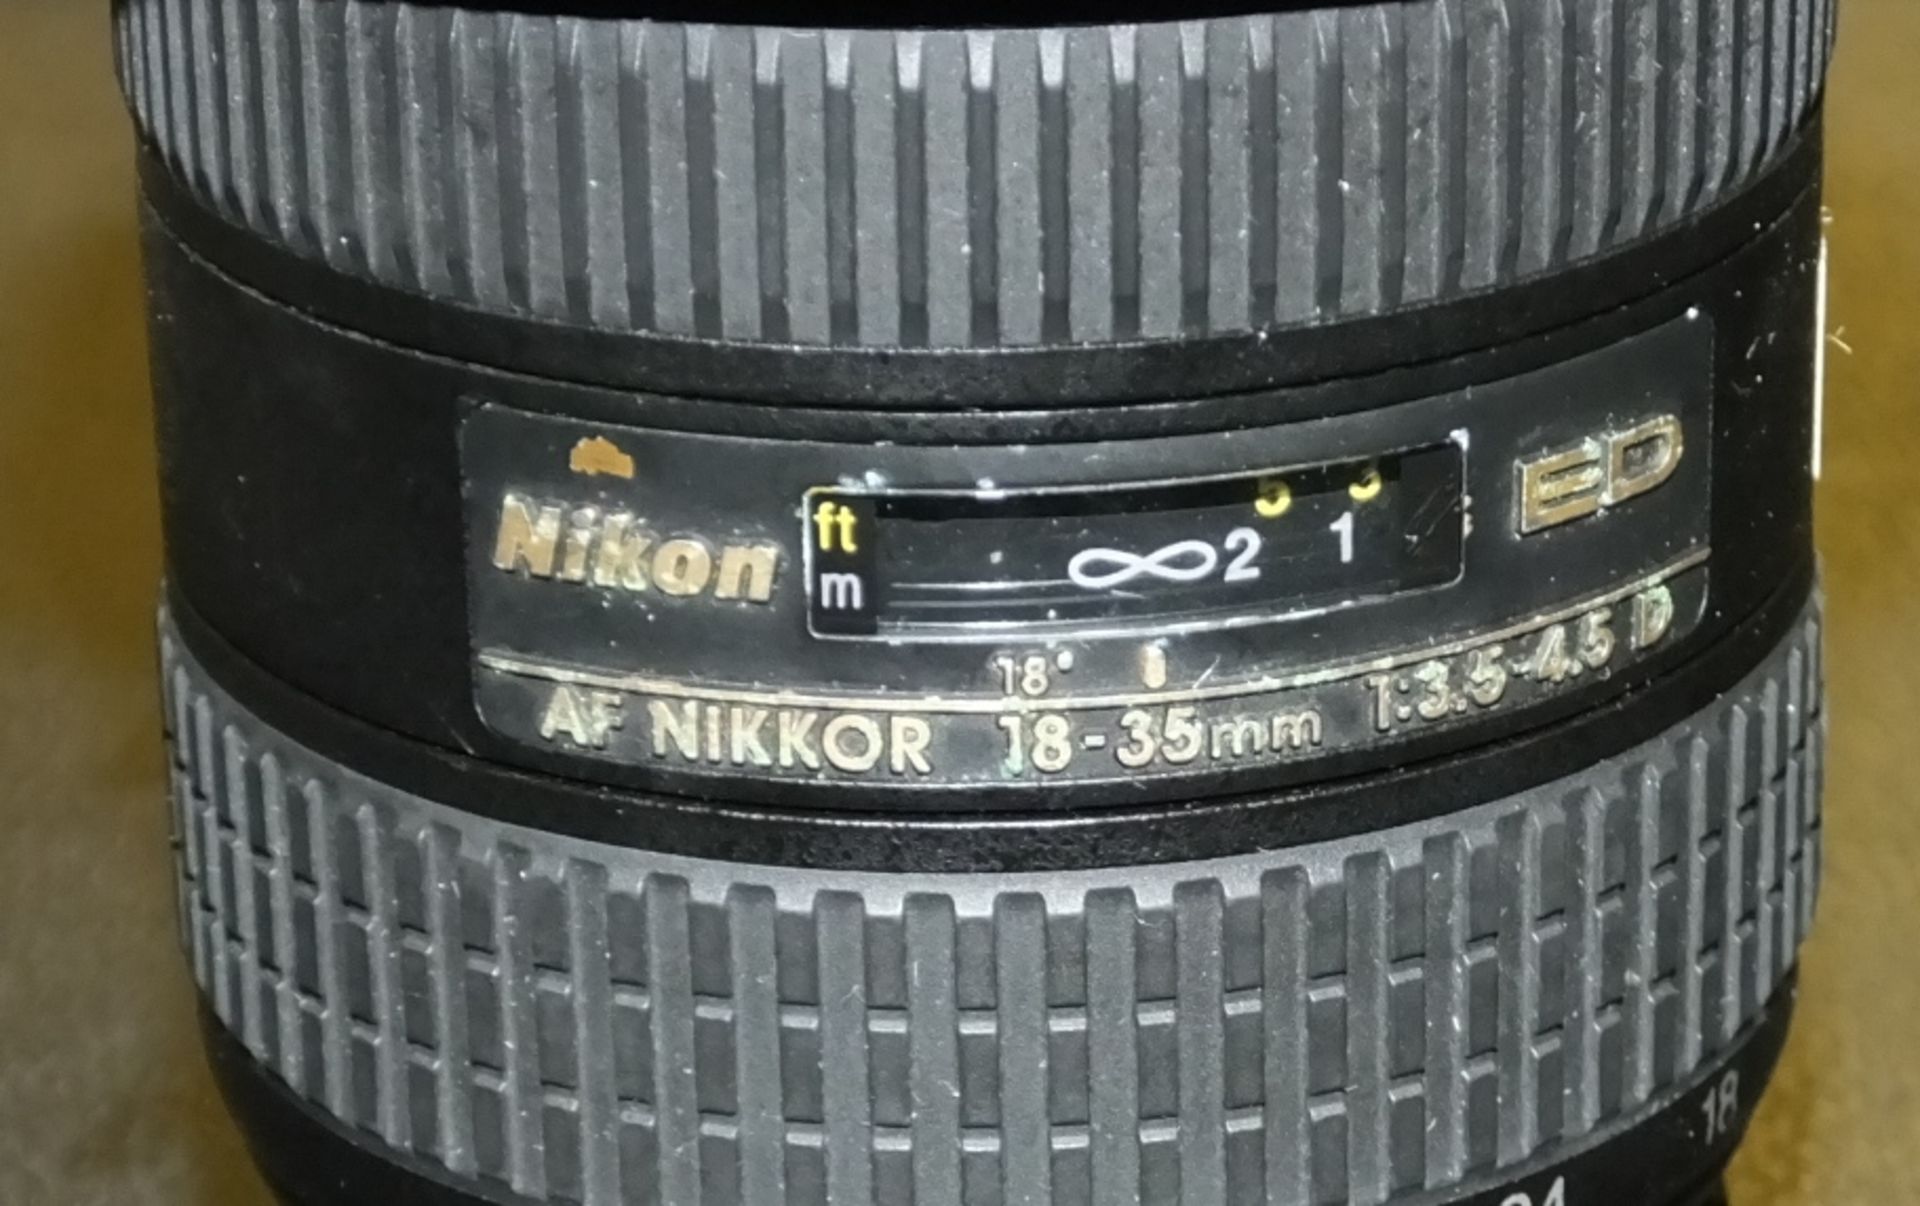 Nikon AF Nikkor 18-35mm 1:3.5-4.5D Lens - Image 2 of 2